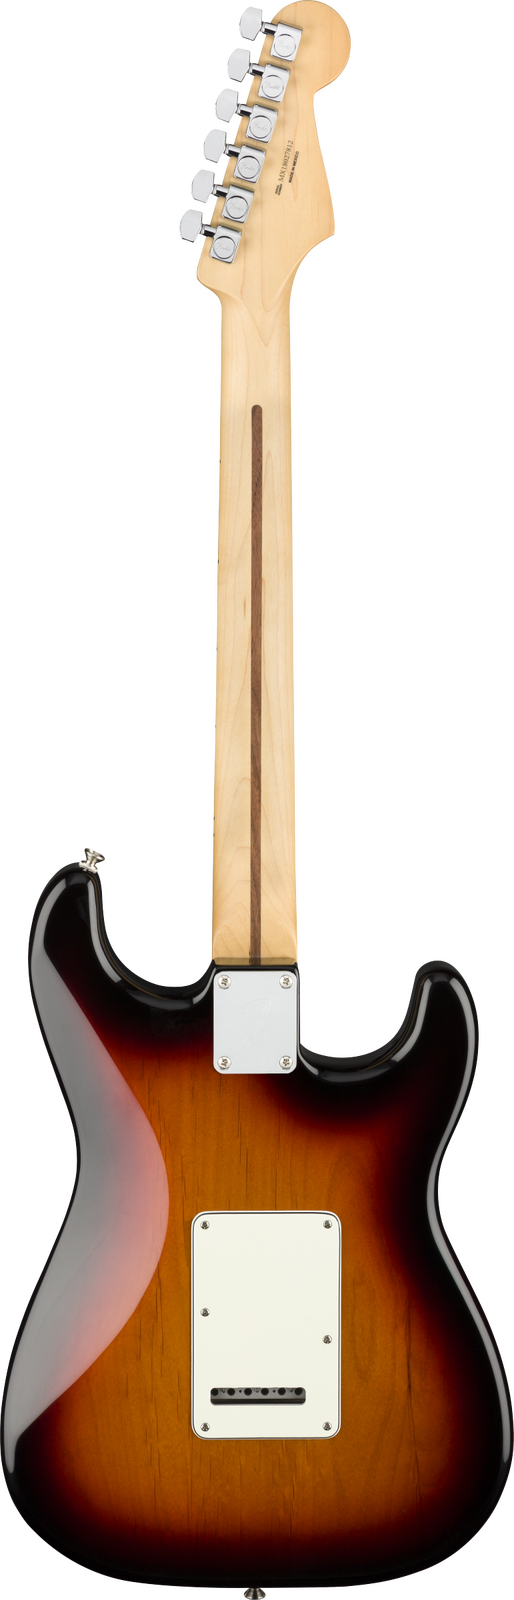 Fender Player Stratocaster Left-Handed 3-Color Sunburst